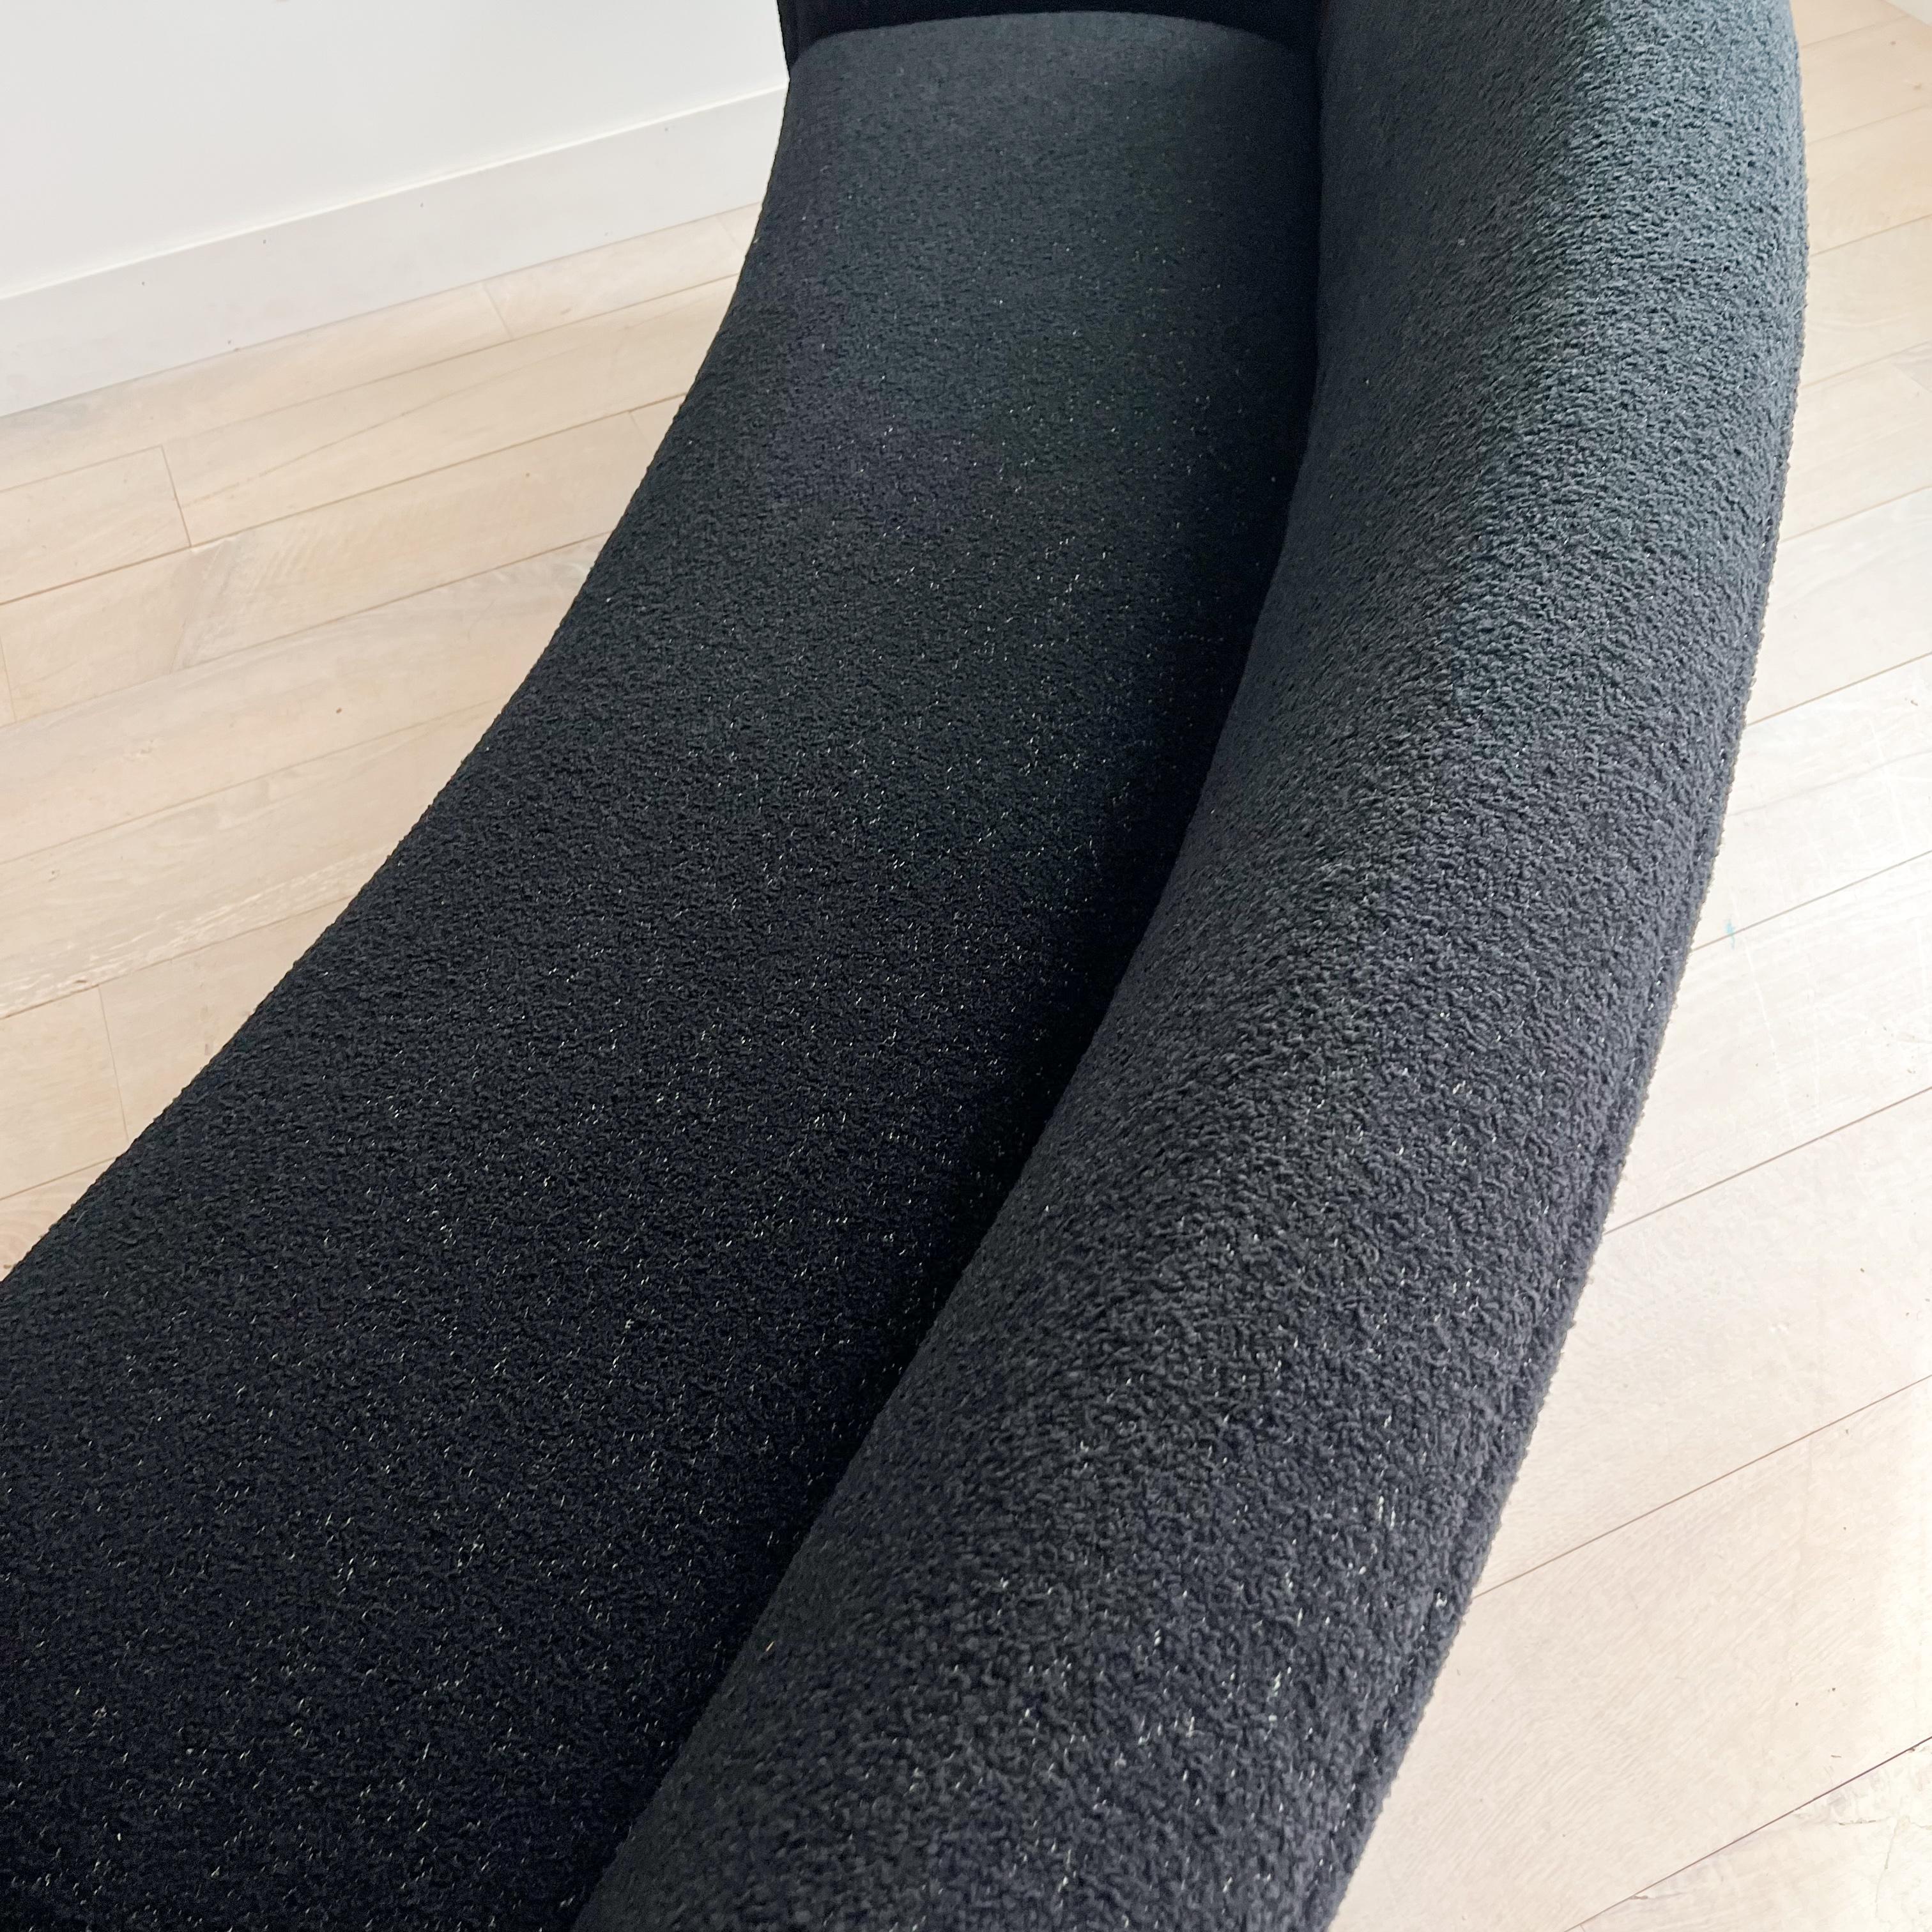 Illum Wikkelso's Rare Banana Curved Sofa - Model 450 - New Upholstery 13